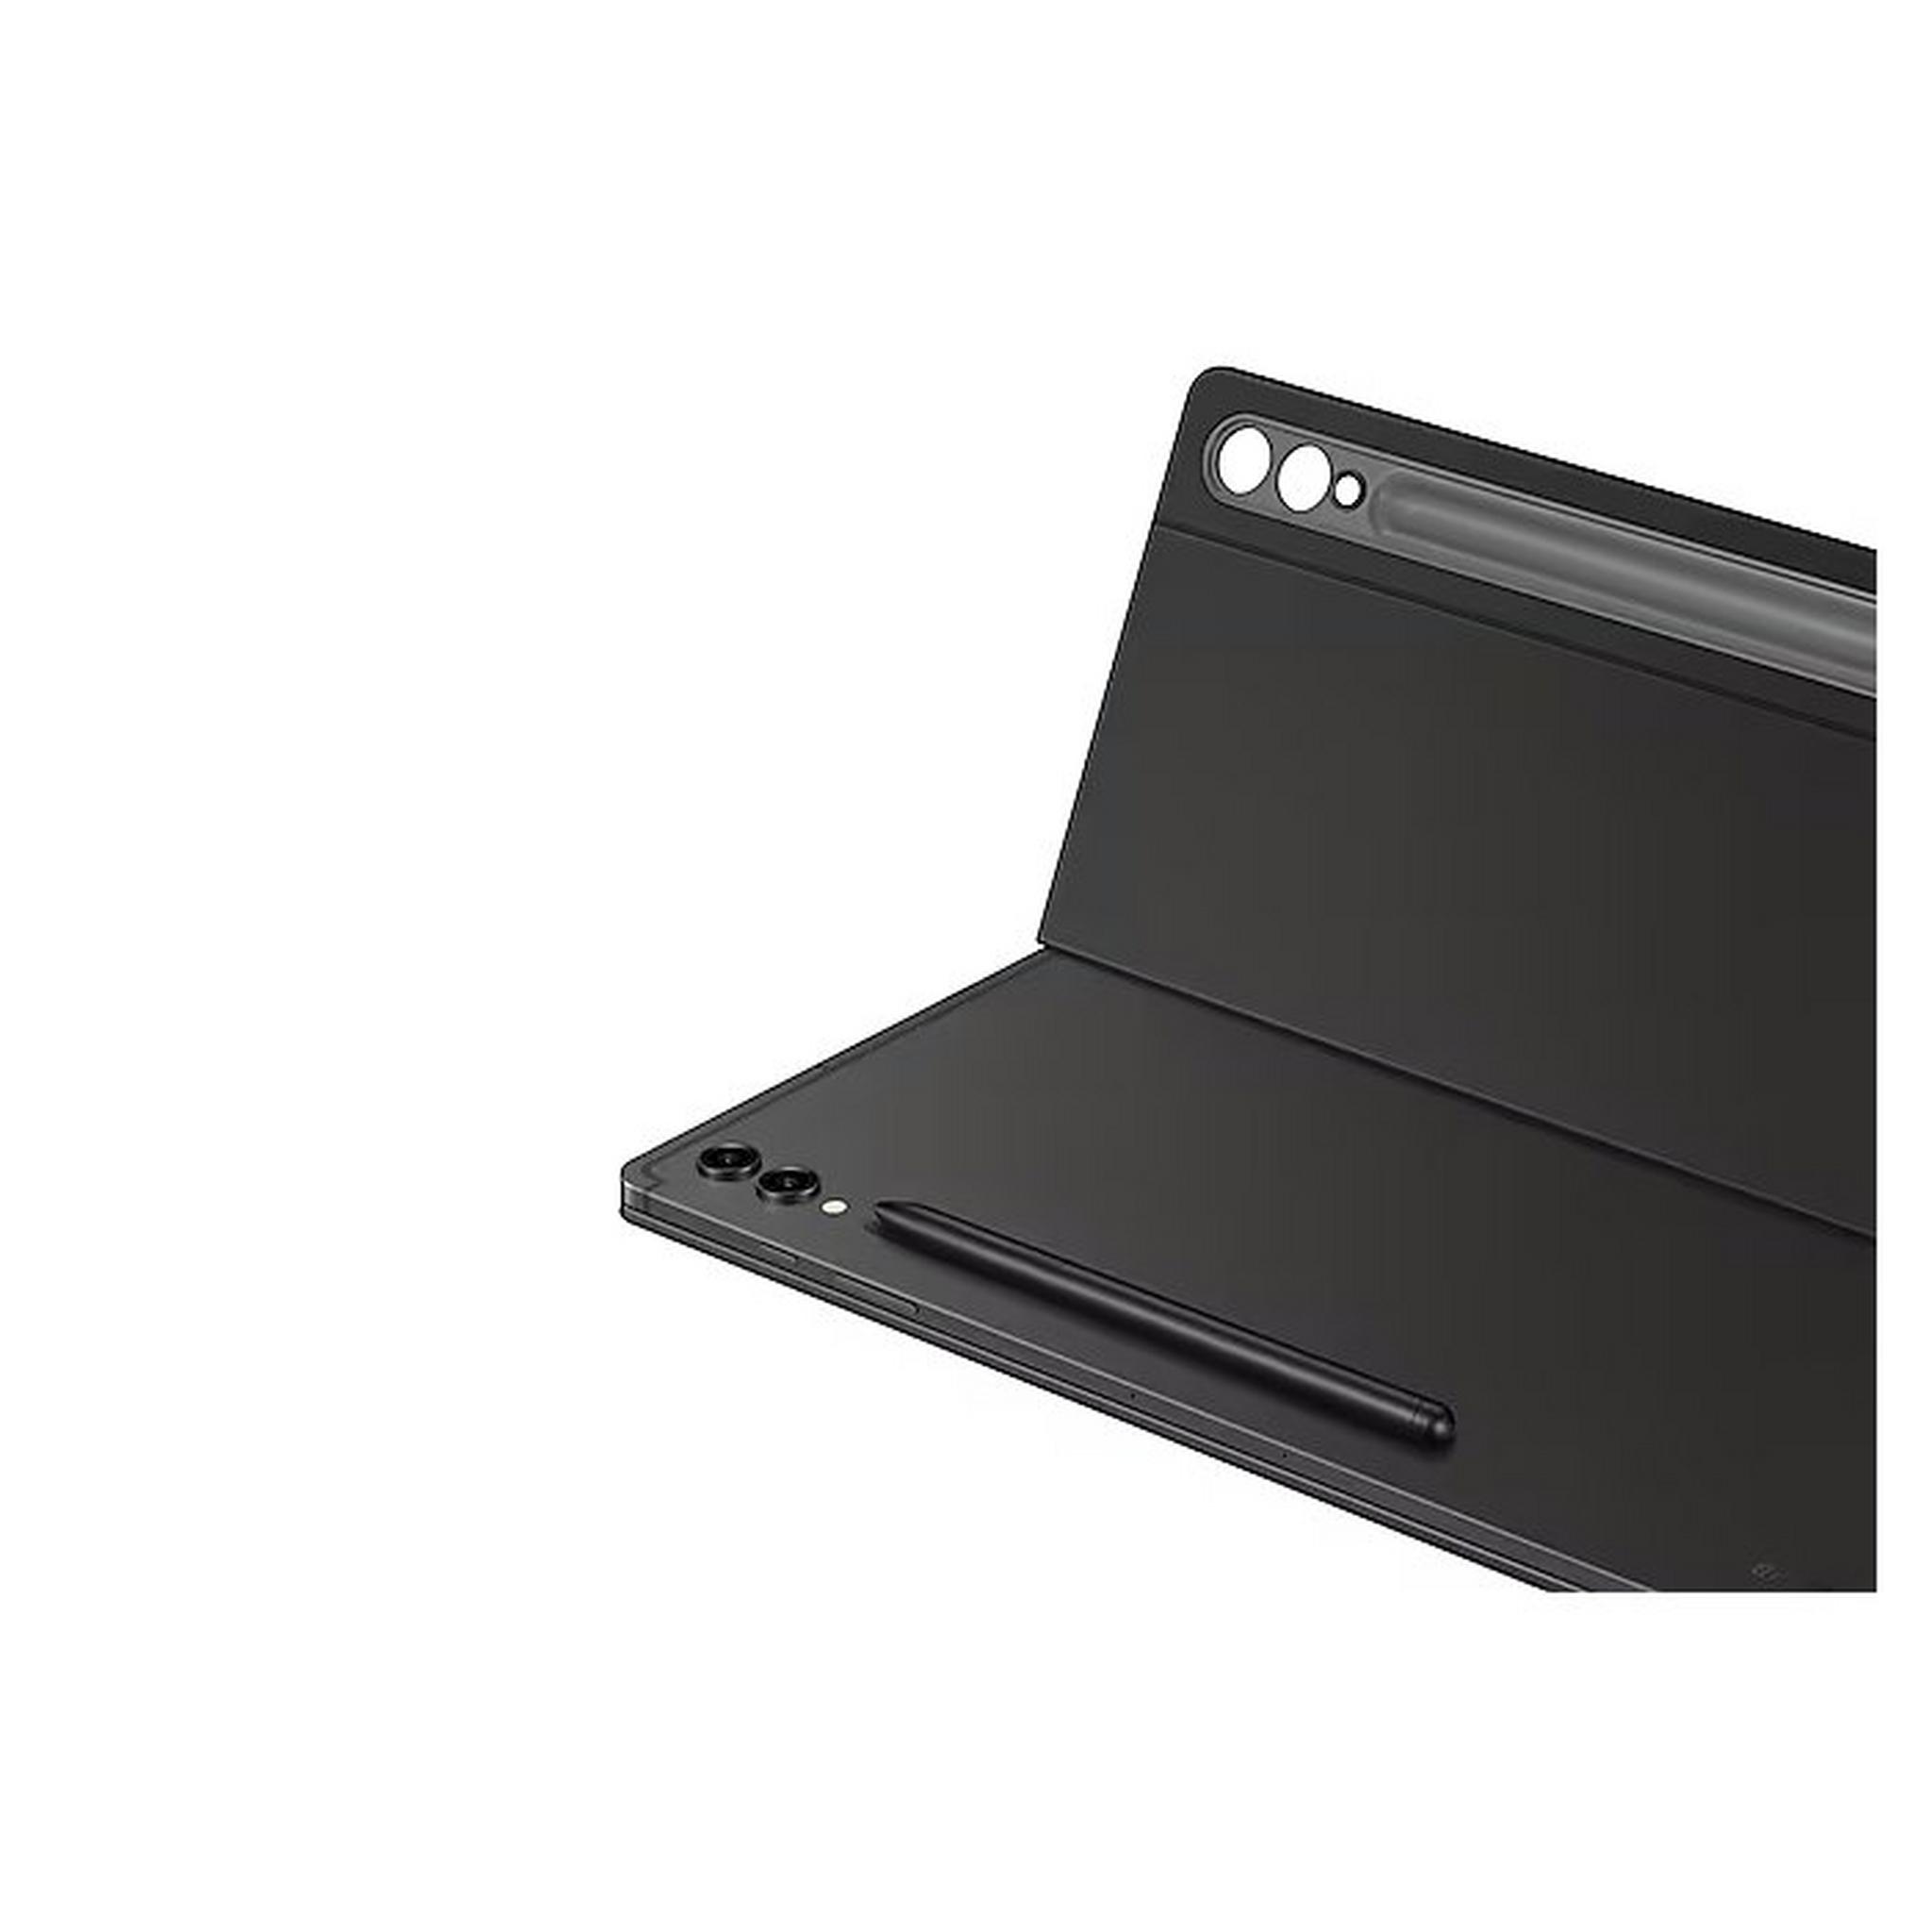 غطاء لوحة مفاتيح نحيف جالكسي تاب S9 الترا بوك من سامسونج، EF-DX910UBEGAE - أسود